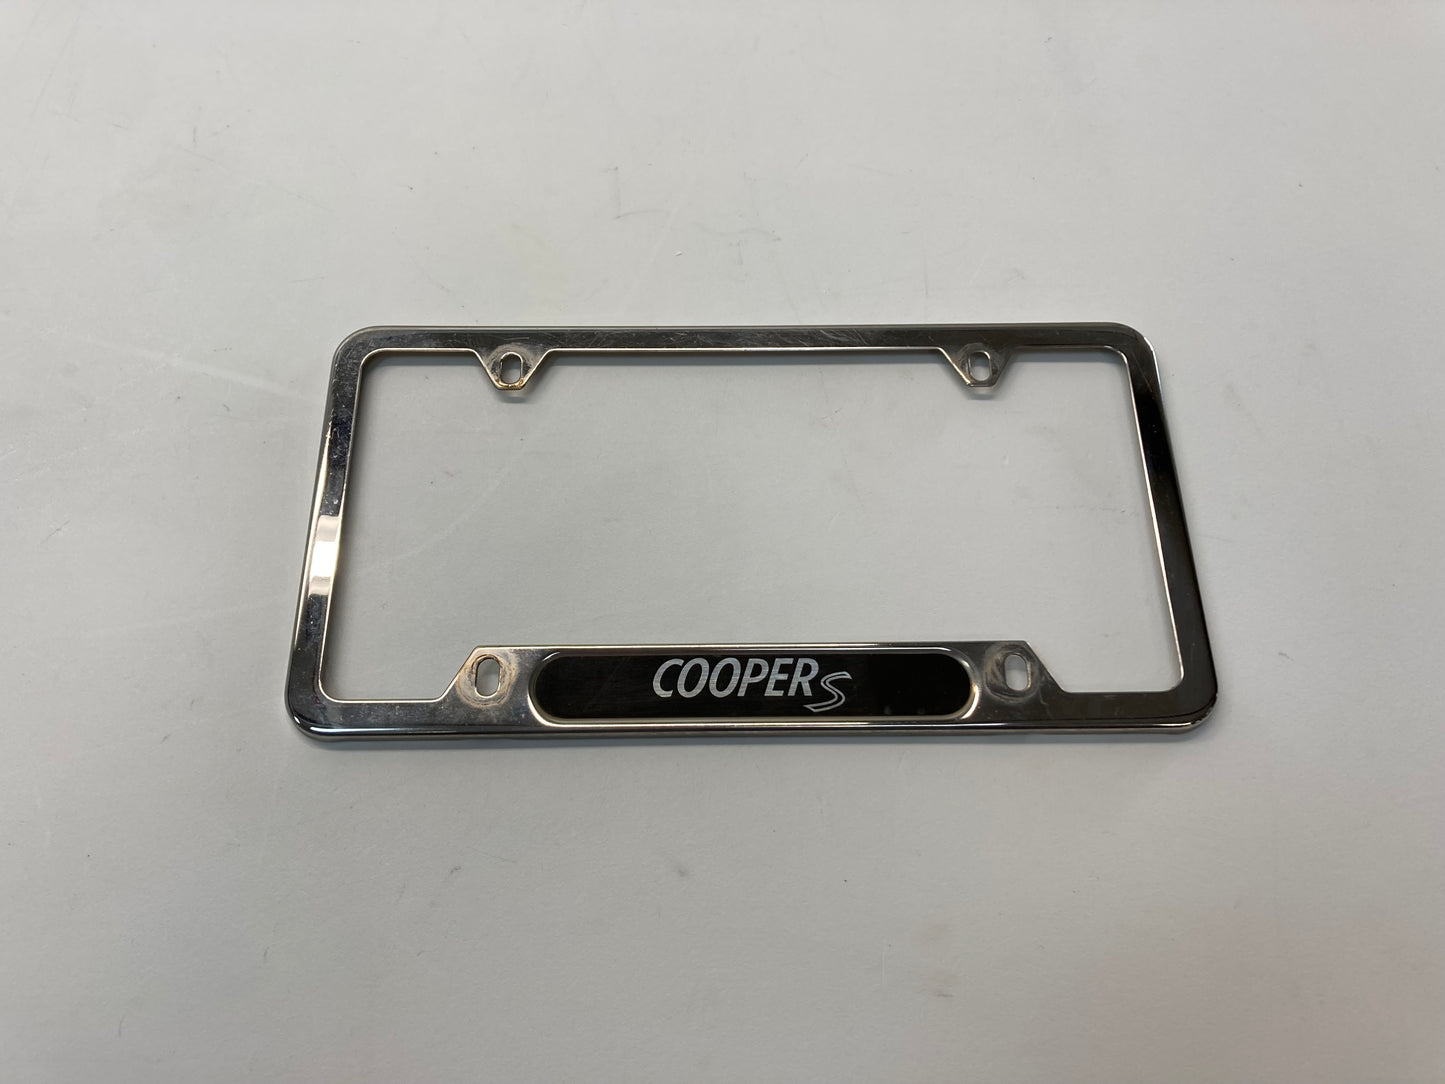 Mini Cooper S Rear License Plate Holder 82120307593 02-17 R5x